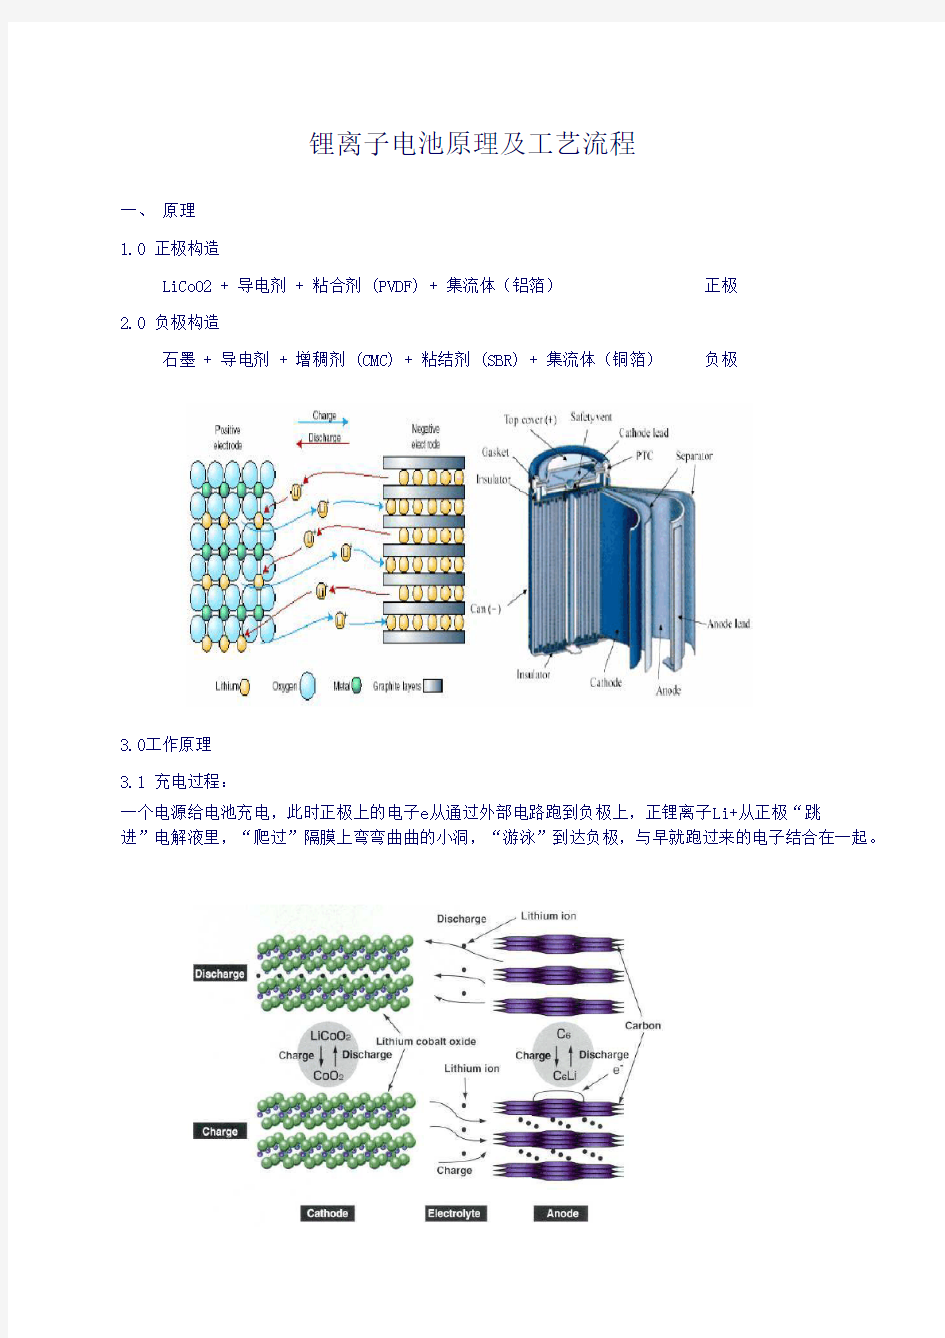 锂离子电池基本原理、配方及工艺流程WORD版